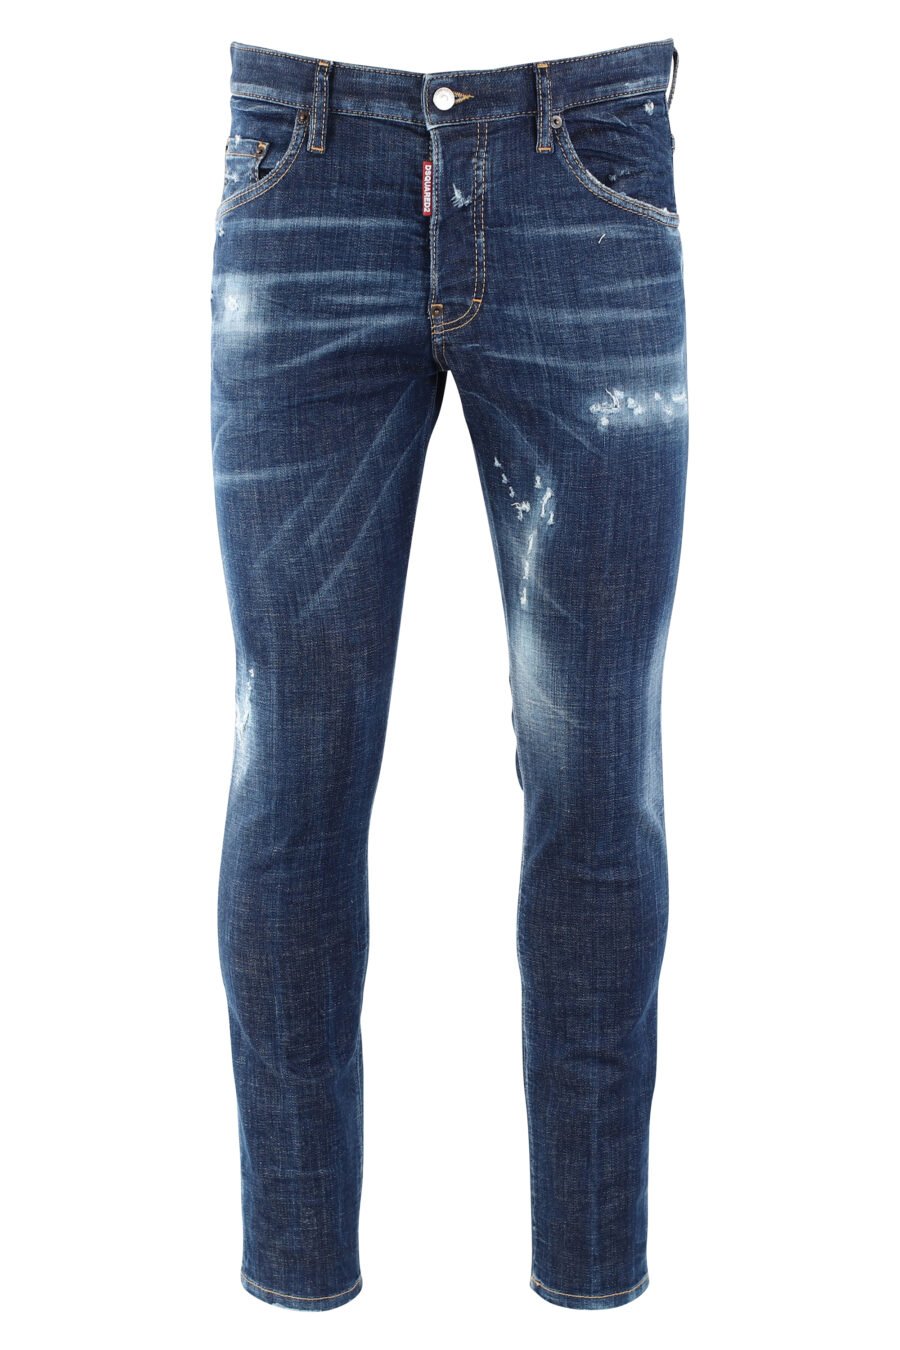 Pantalón vaquero "icon skater jean" azul oscuro semidesgastado - IMG 9653